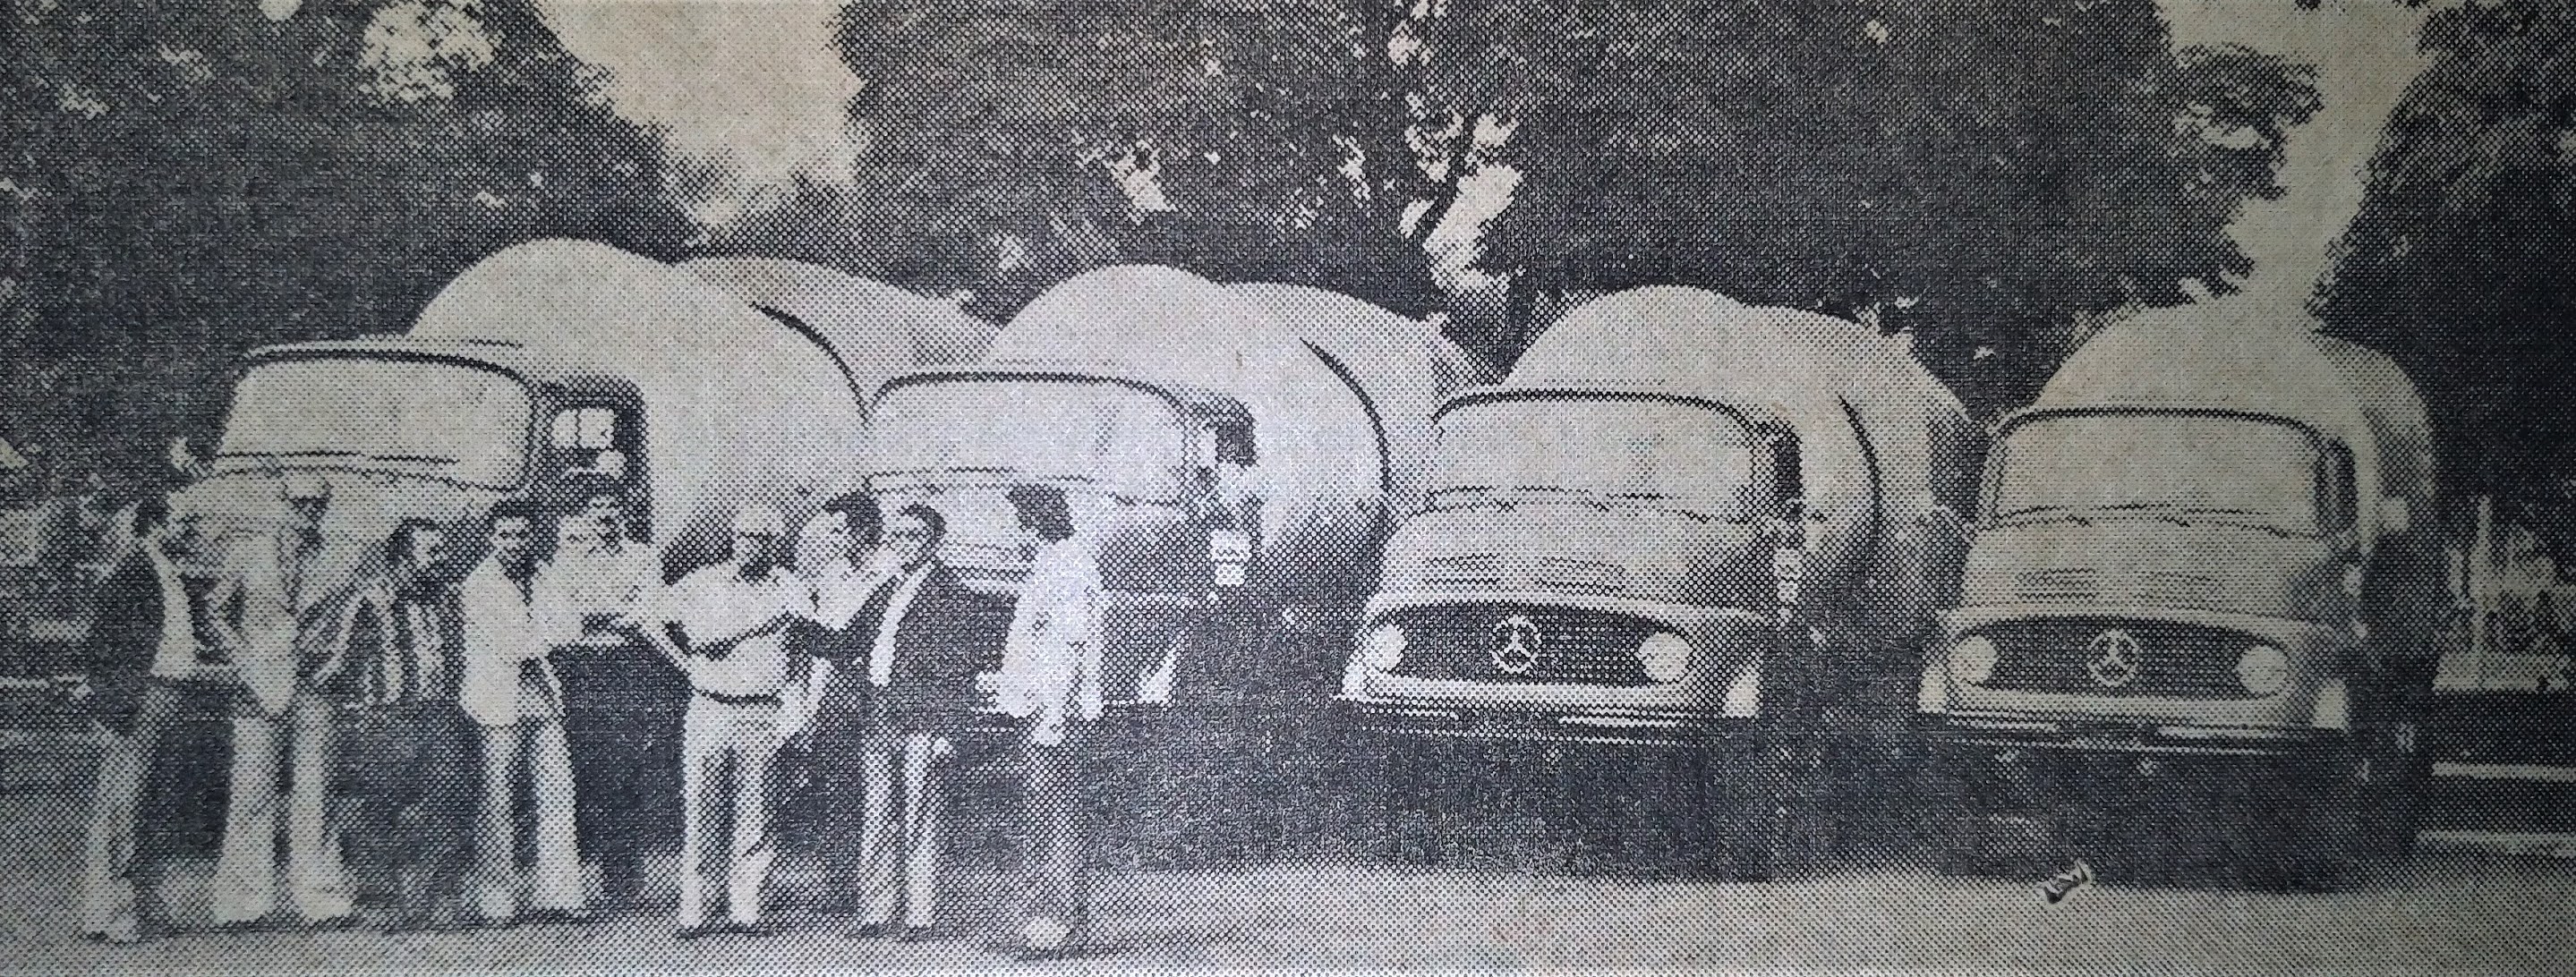 Entrega de caminhões KUKA - 1978